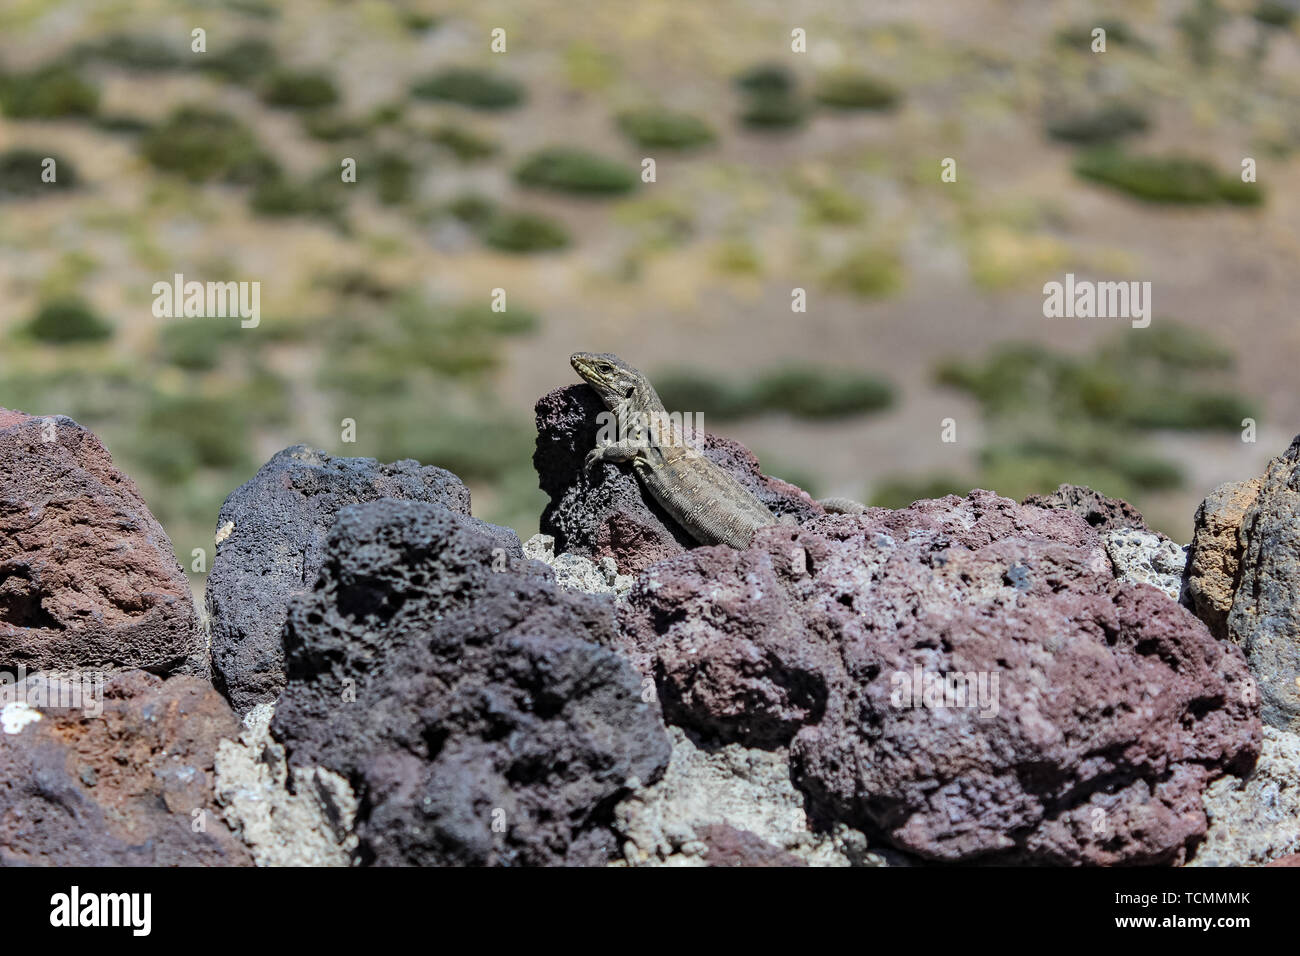 Canarino lizard (Gallotia galloti, femmina) è in appoggio sulla lava vulcanica di pietra. La lucertola guarda la fotocamera, close up, macro sfondo naturale. Foto Stock